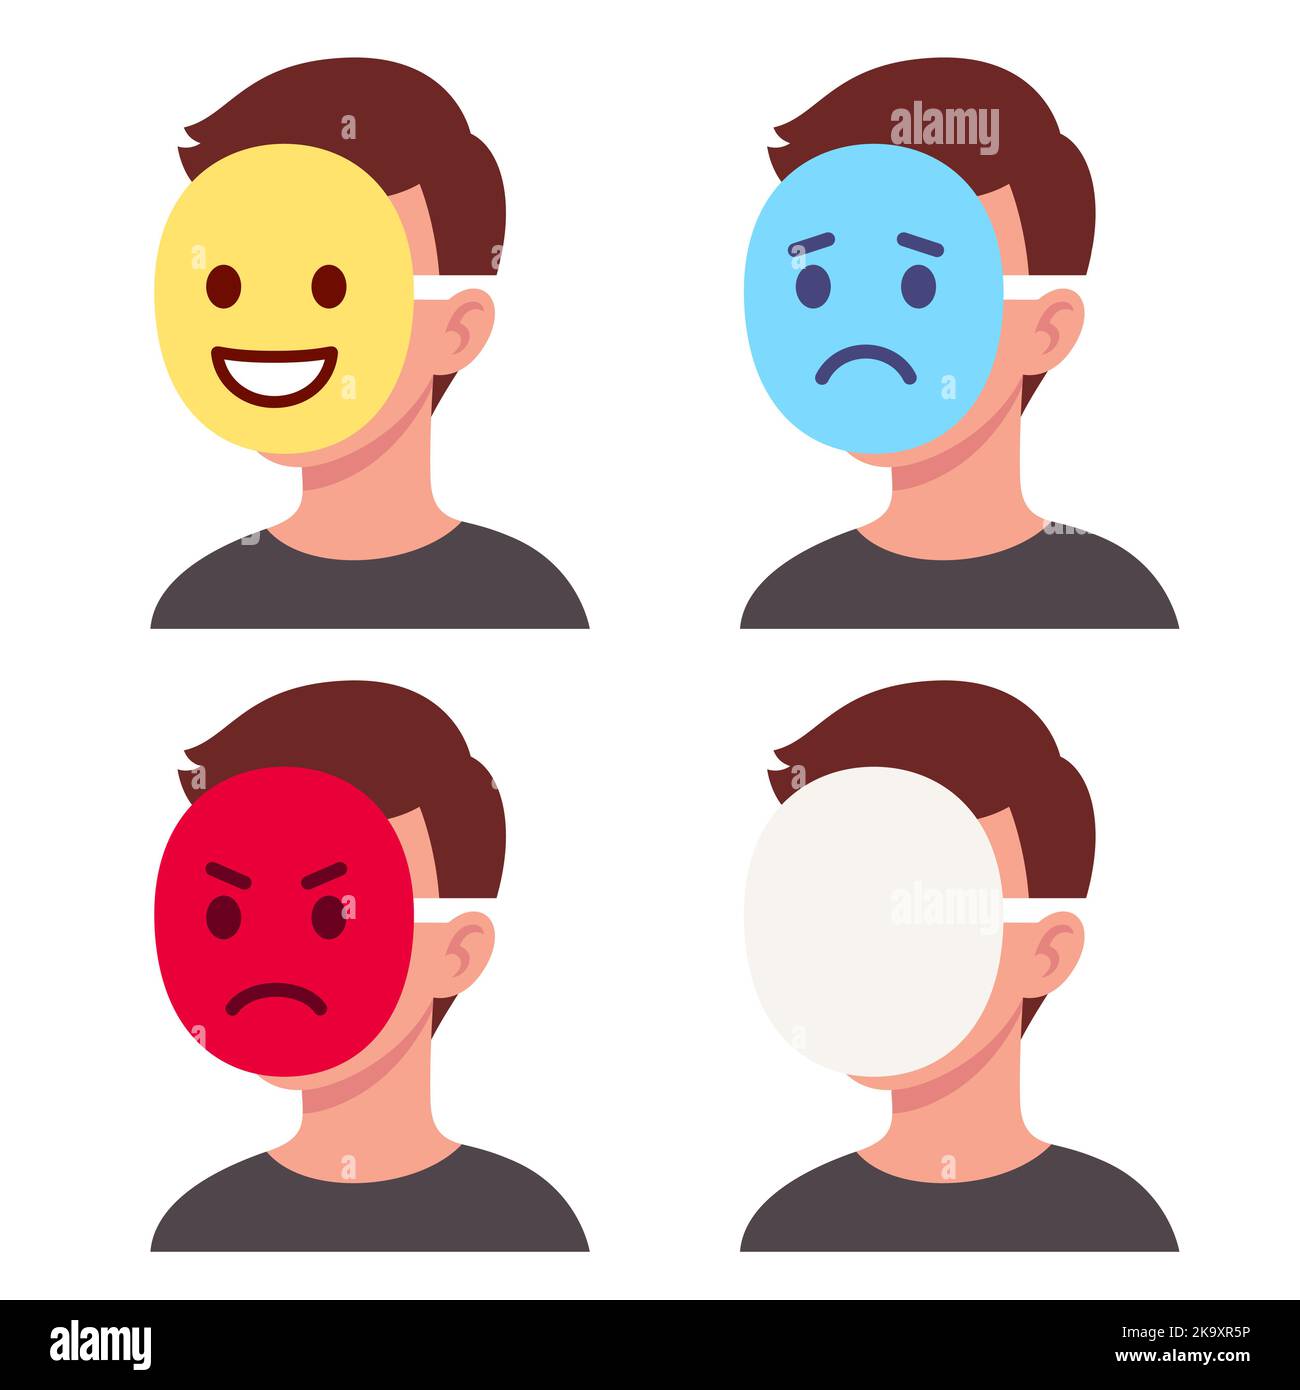 Emotion face mask Banque d'images détourées - Alamy